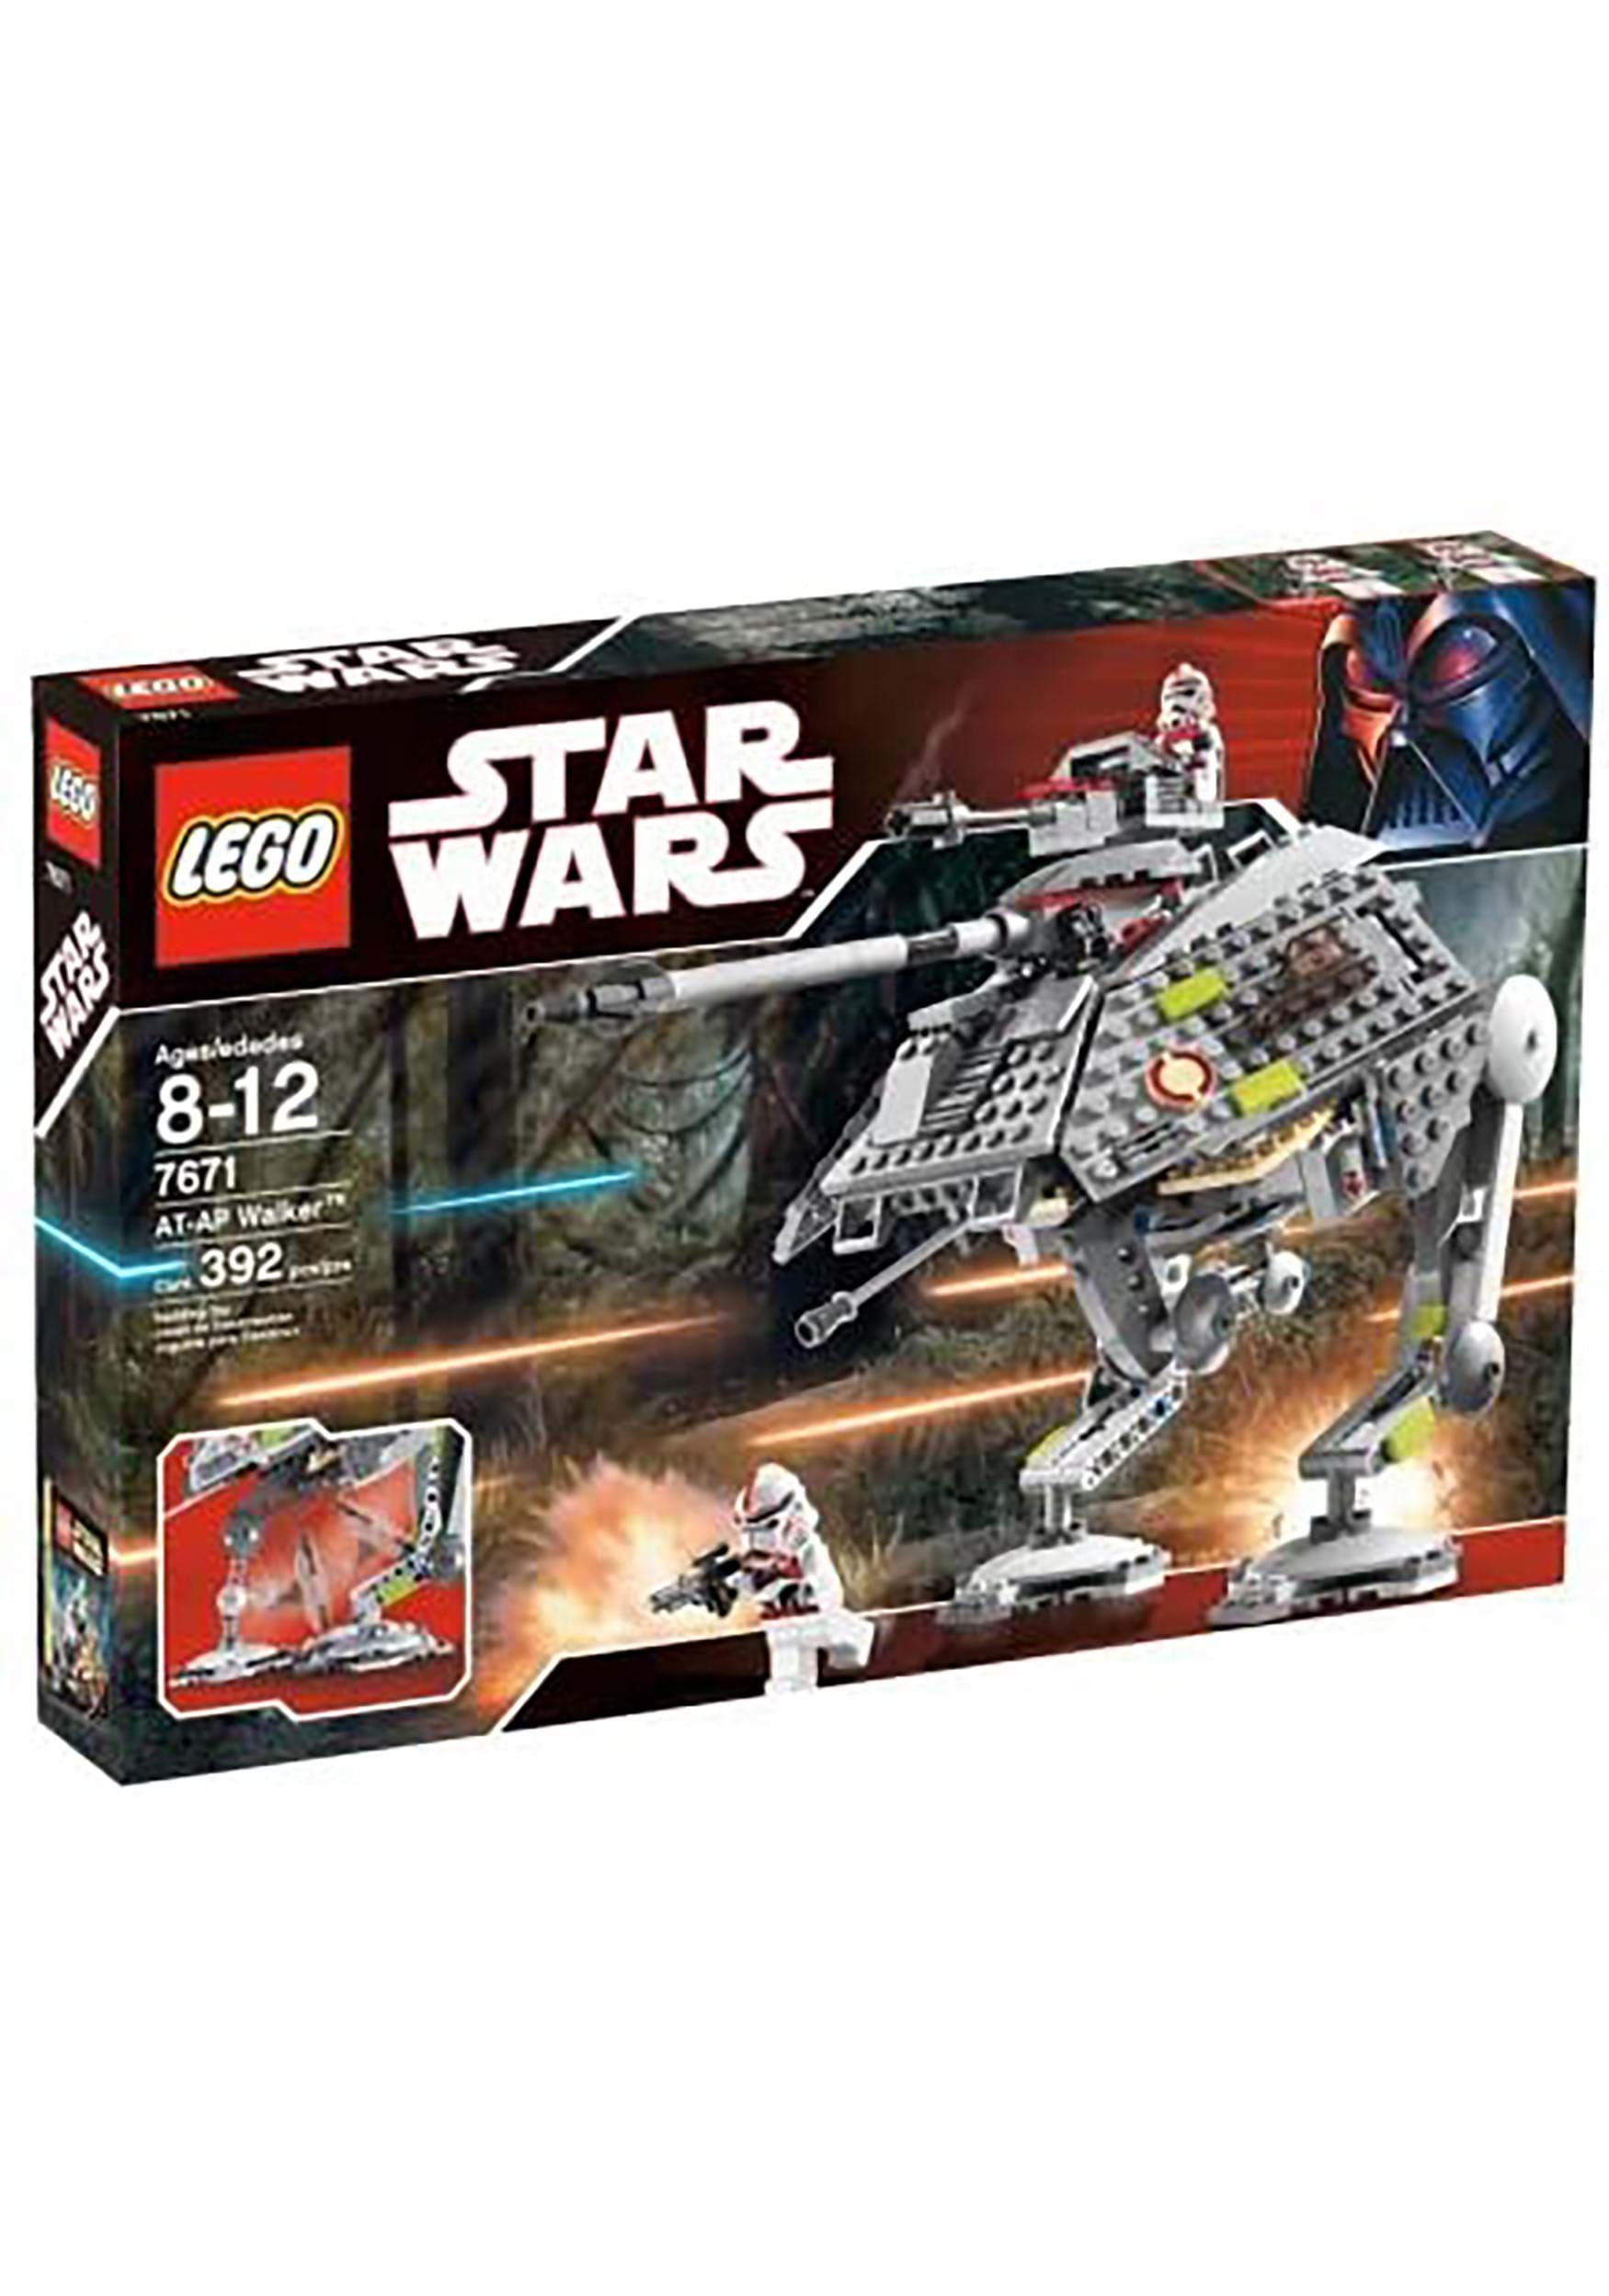 Lego Star Wars AT-AP Walker Set